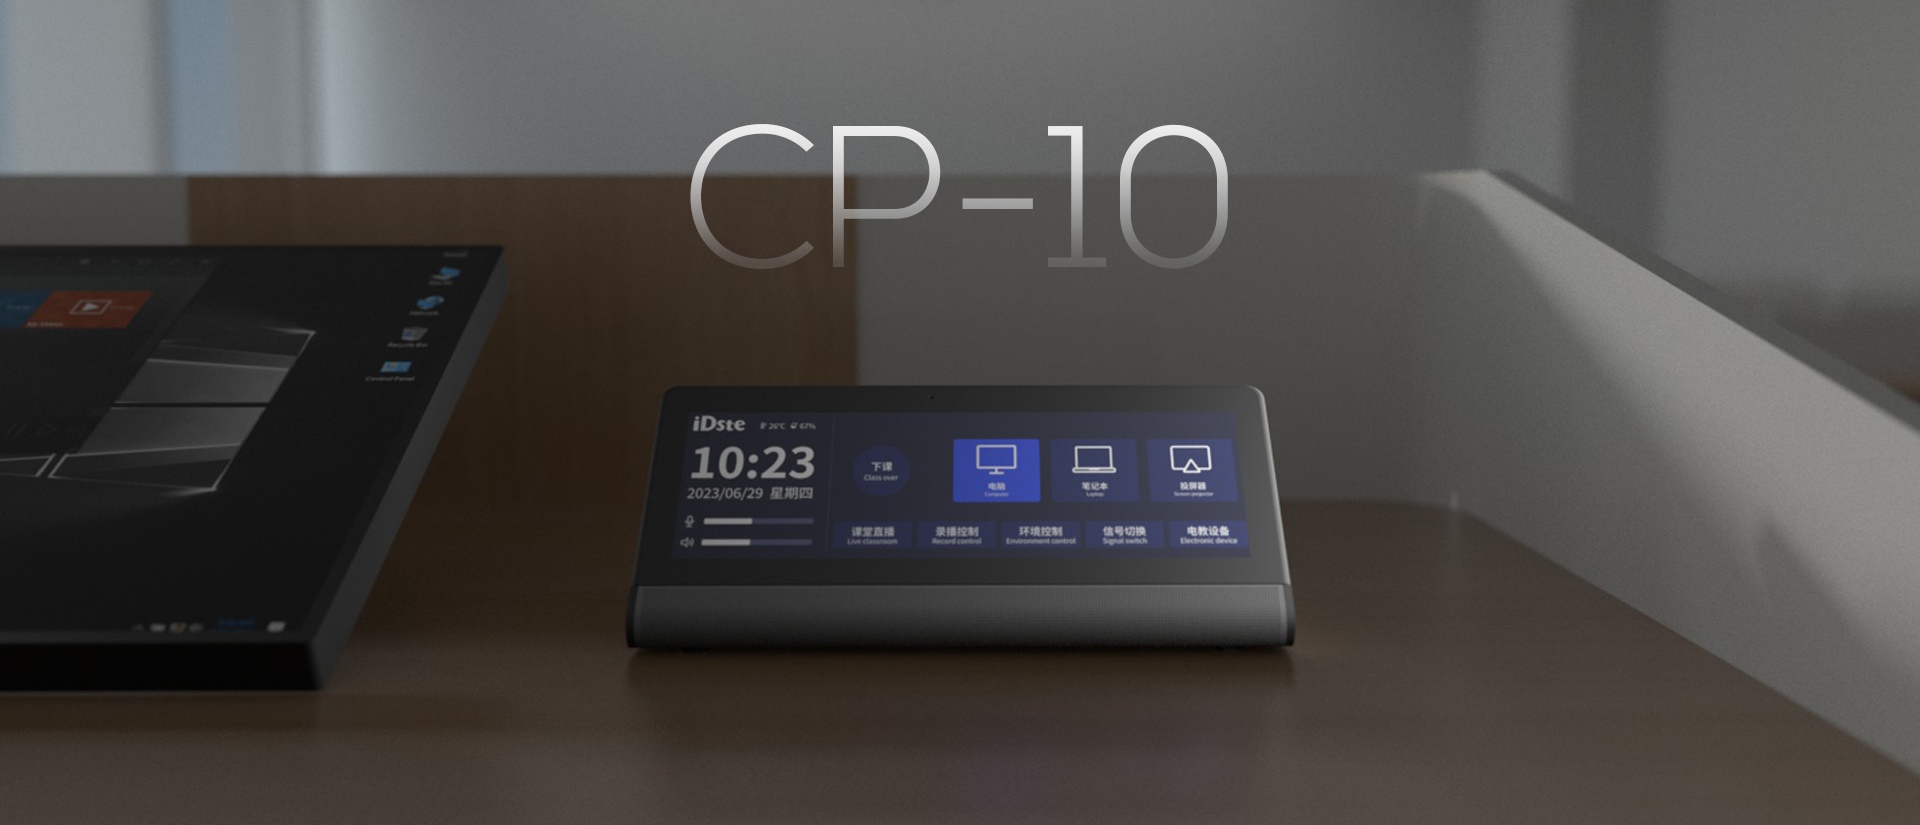 智能控制面板CP-10